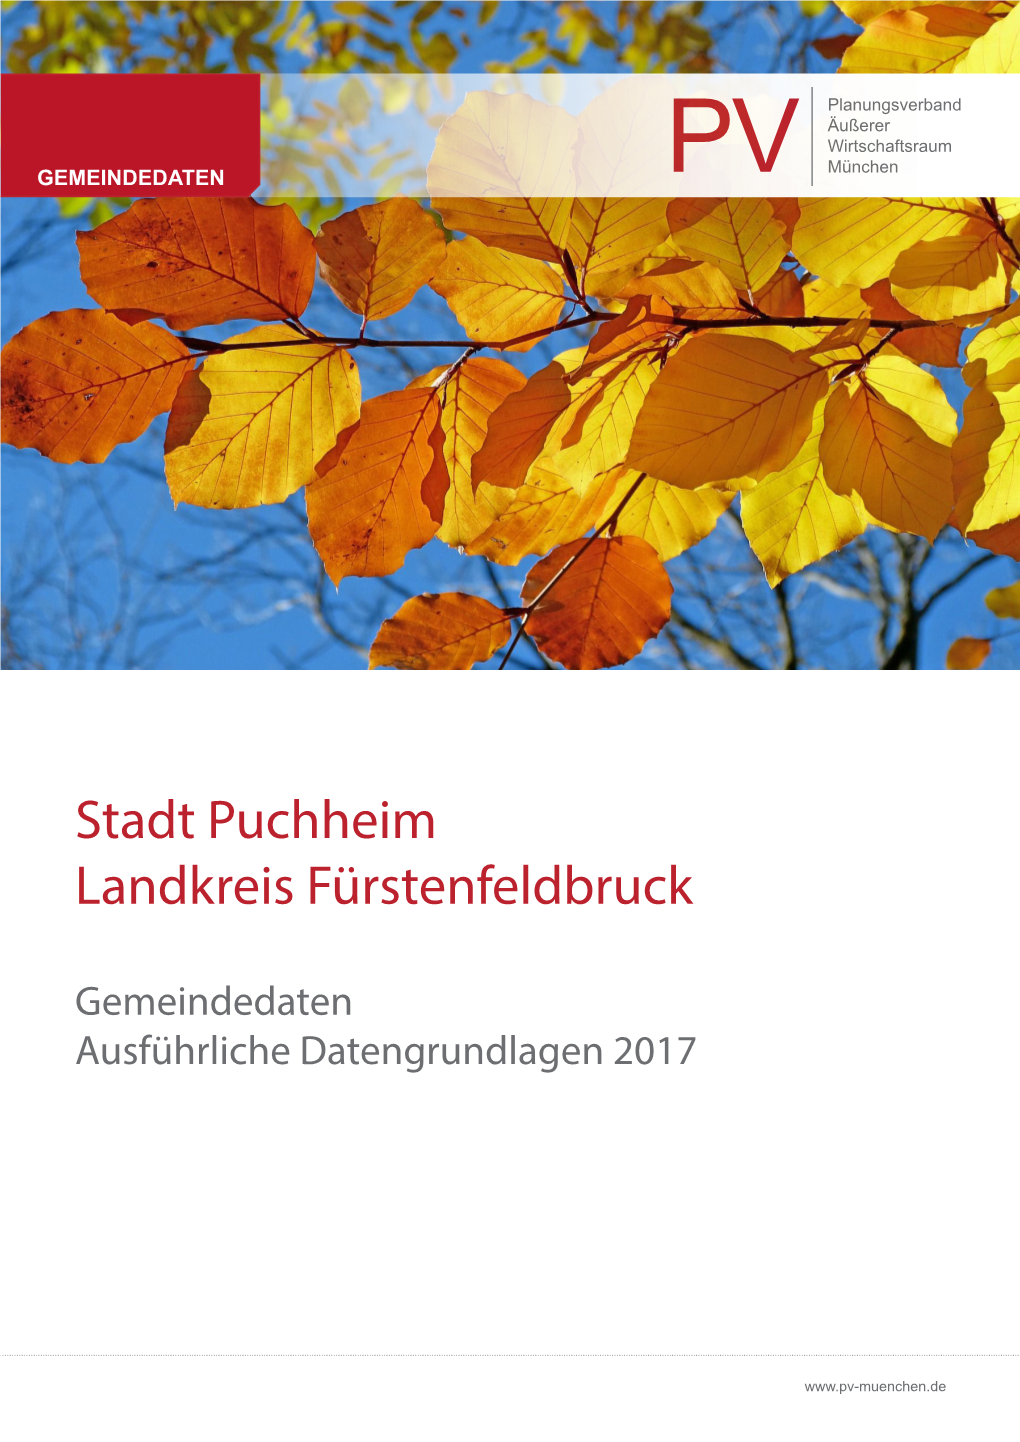 Stadt Puchheim Landkreis Fürstenfeldbruck